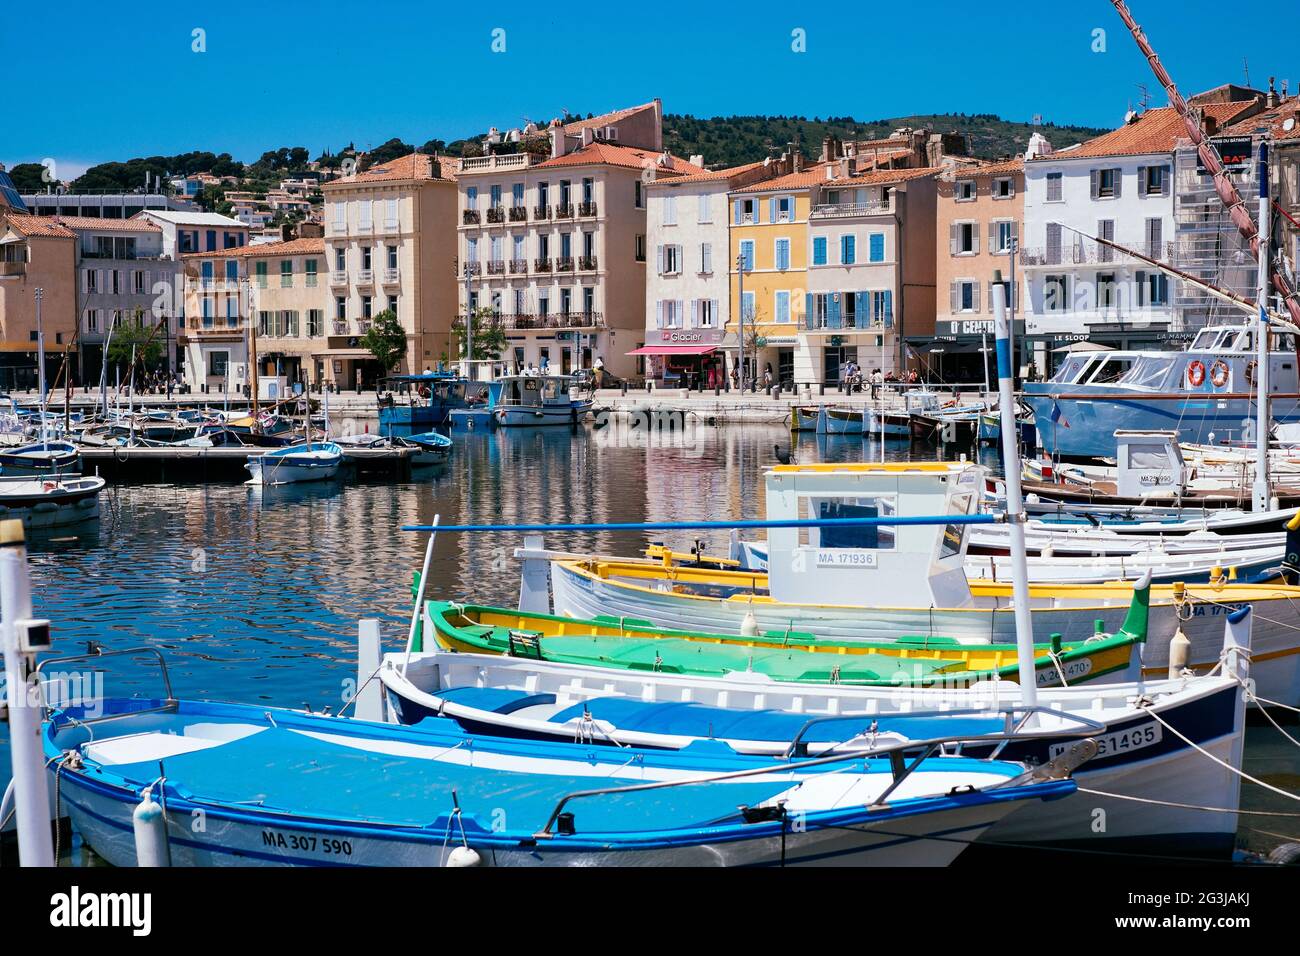 Bateaux dans le port de la Ciotat, sud de la France Banque D'Images